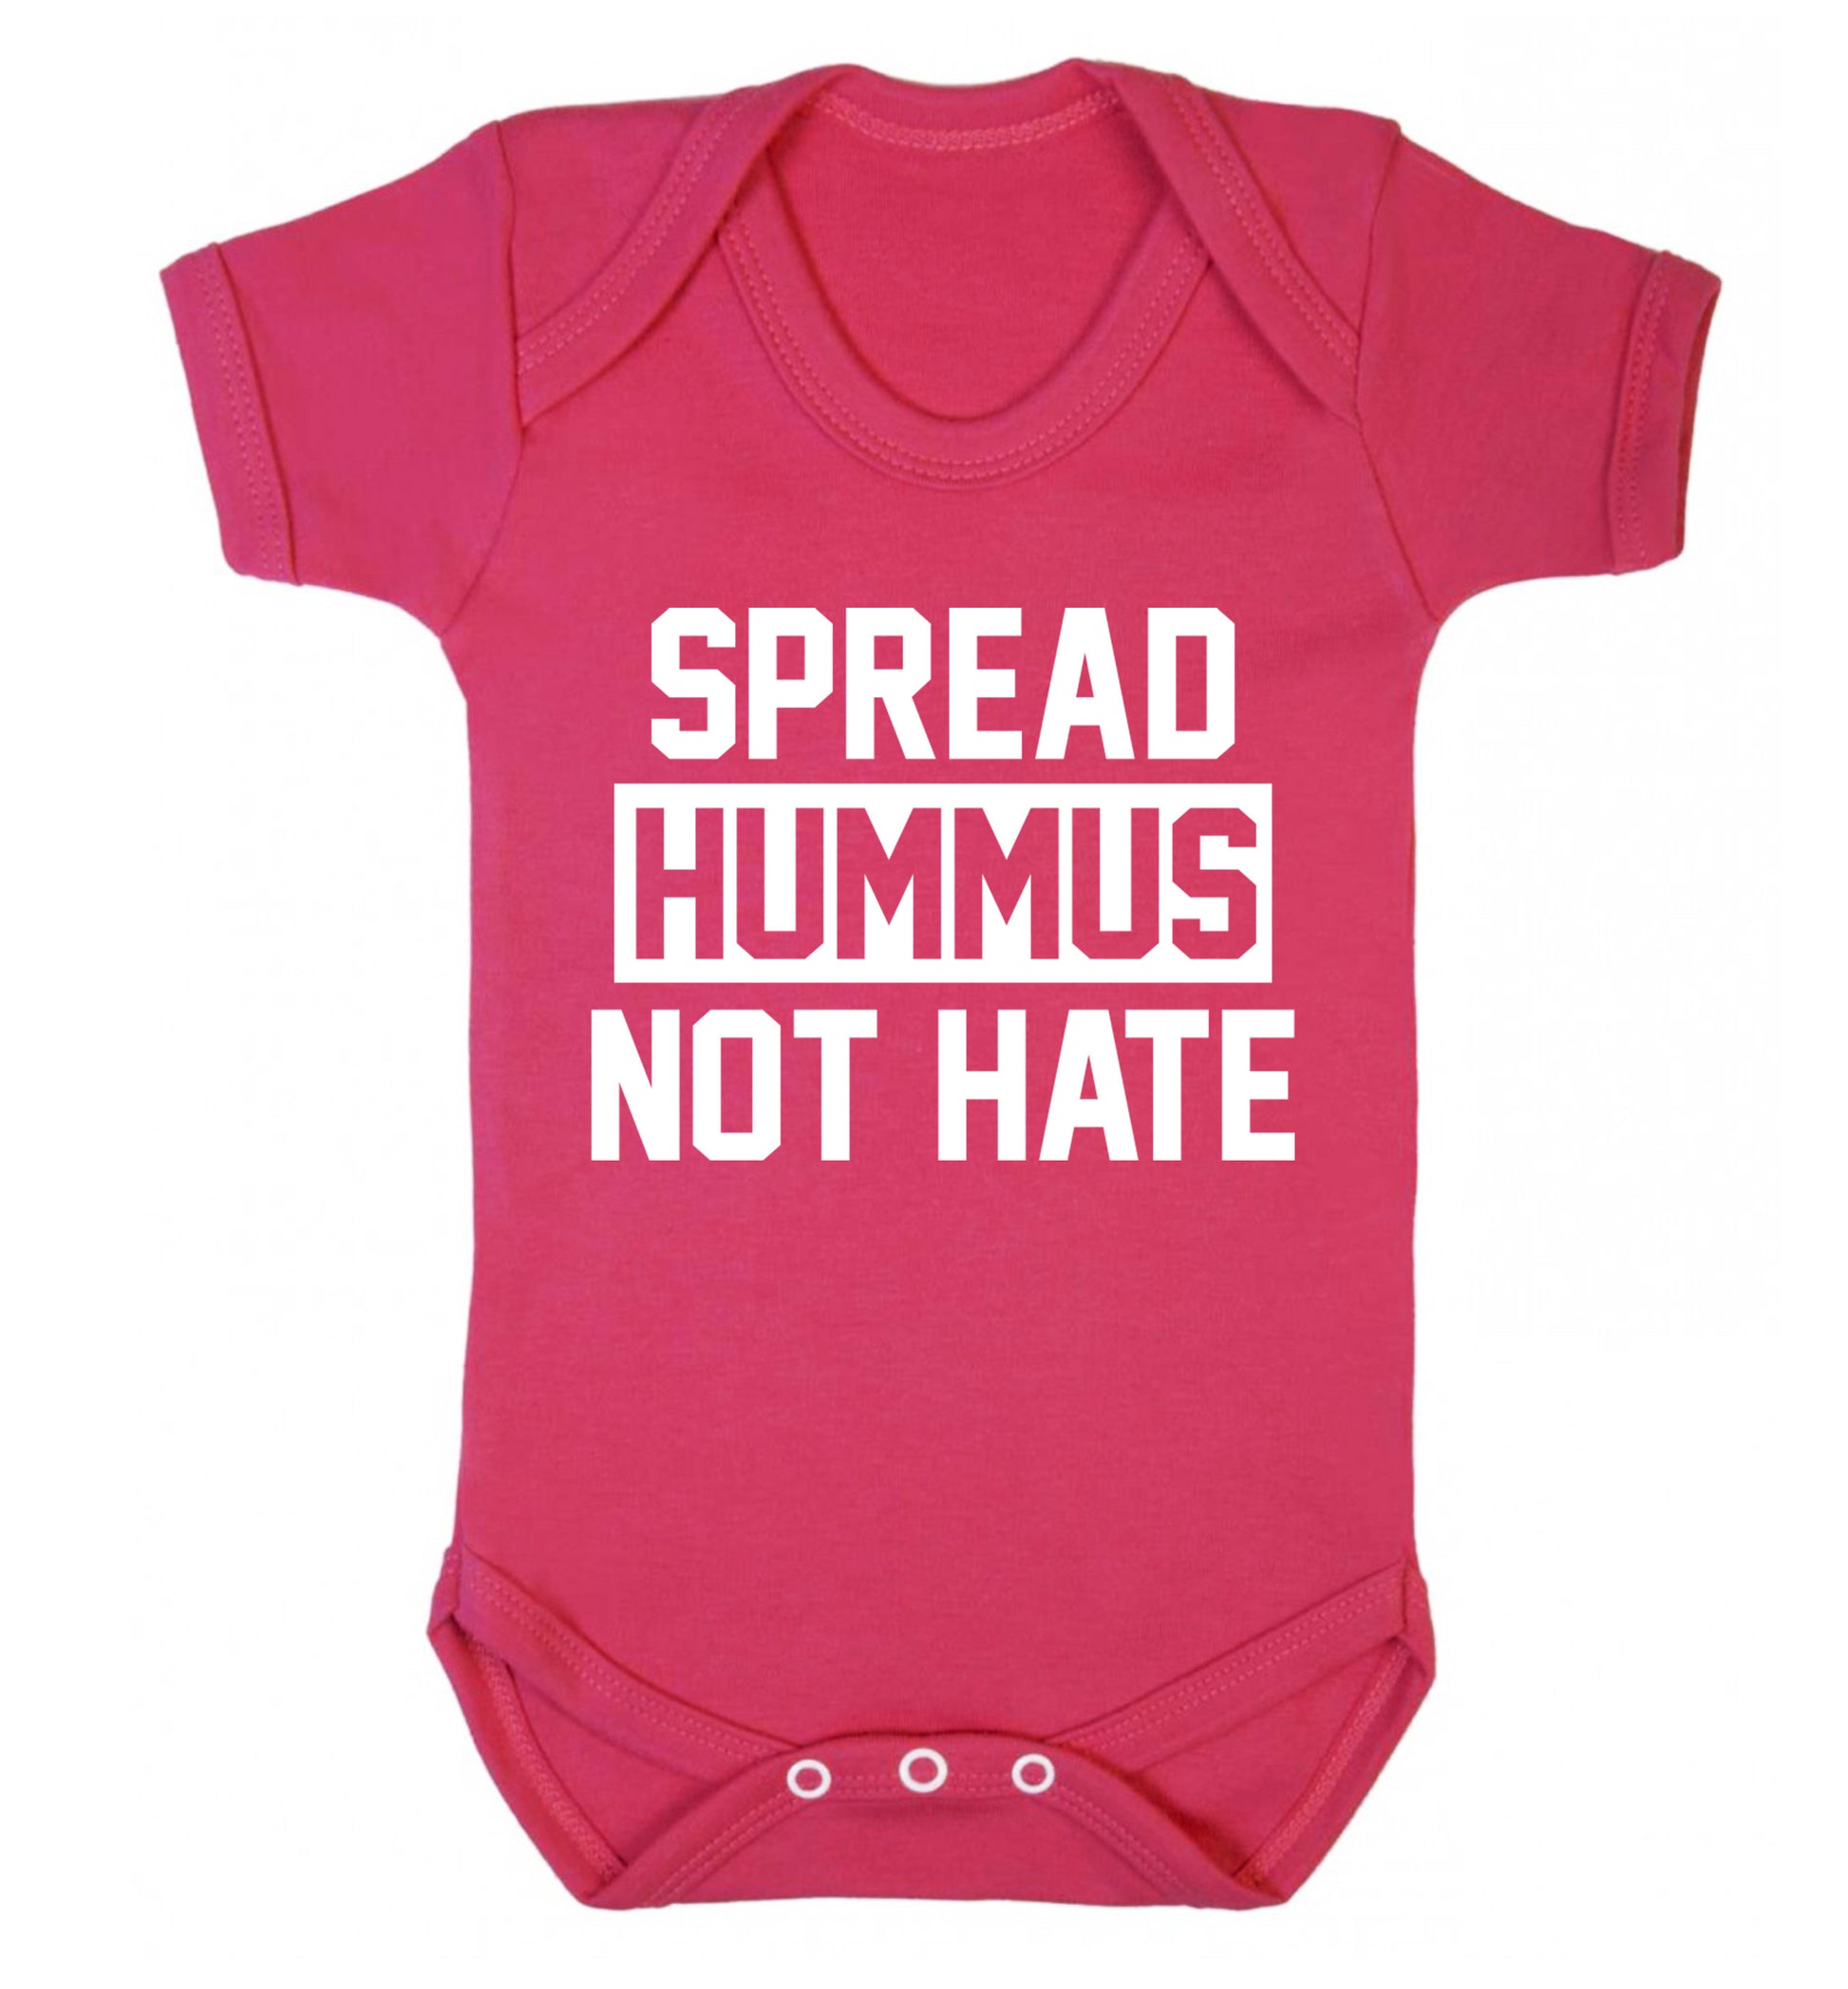 Spread hummus not hate Baby Vest dark pink 18-24 months